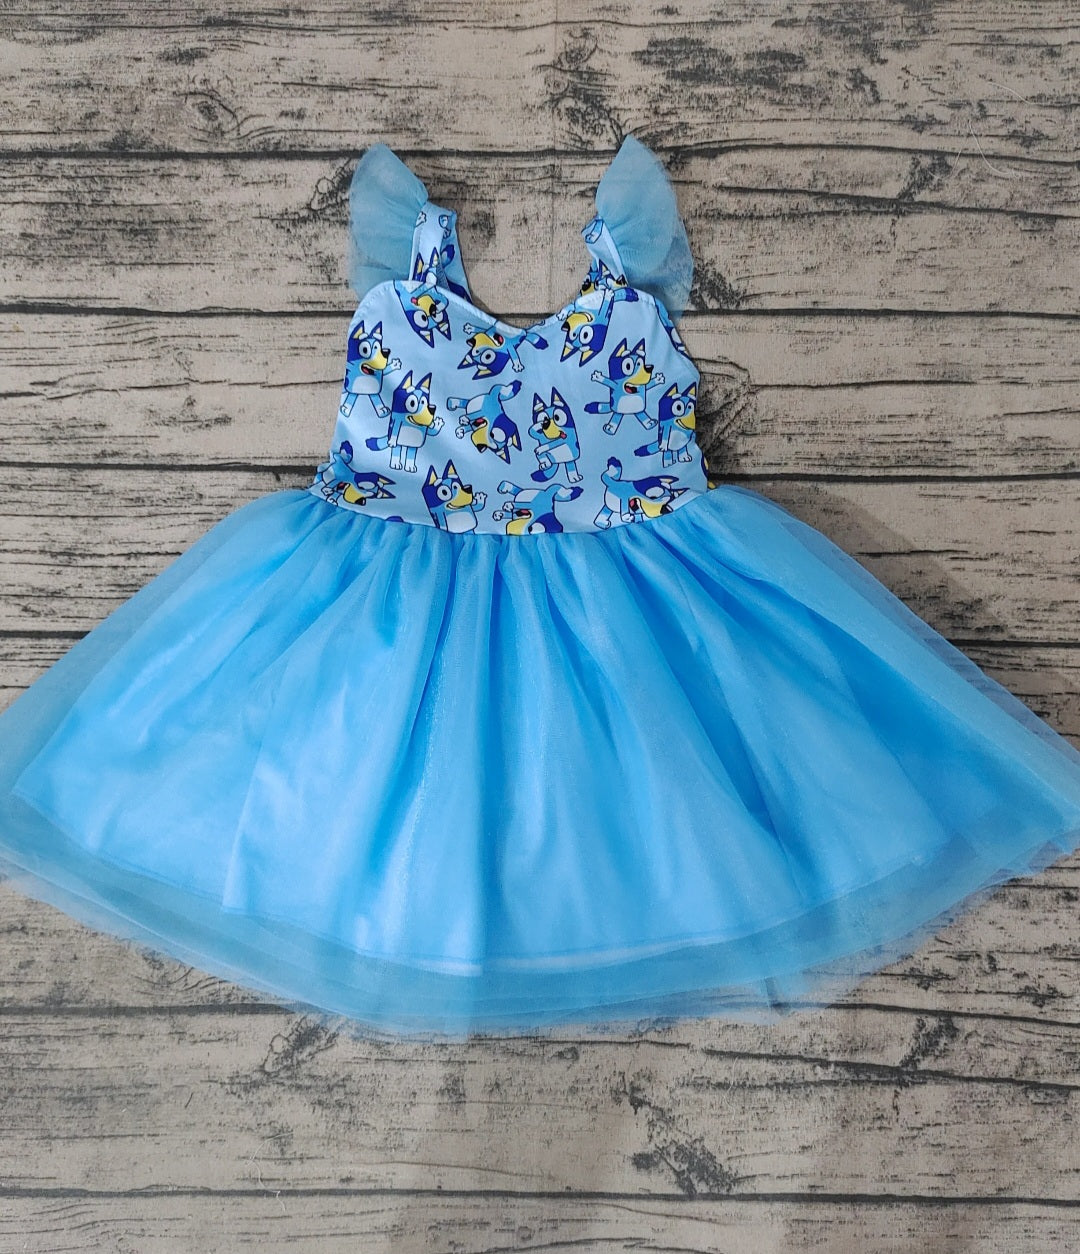 Bluey Toddler Dress 